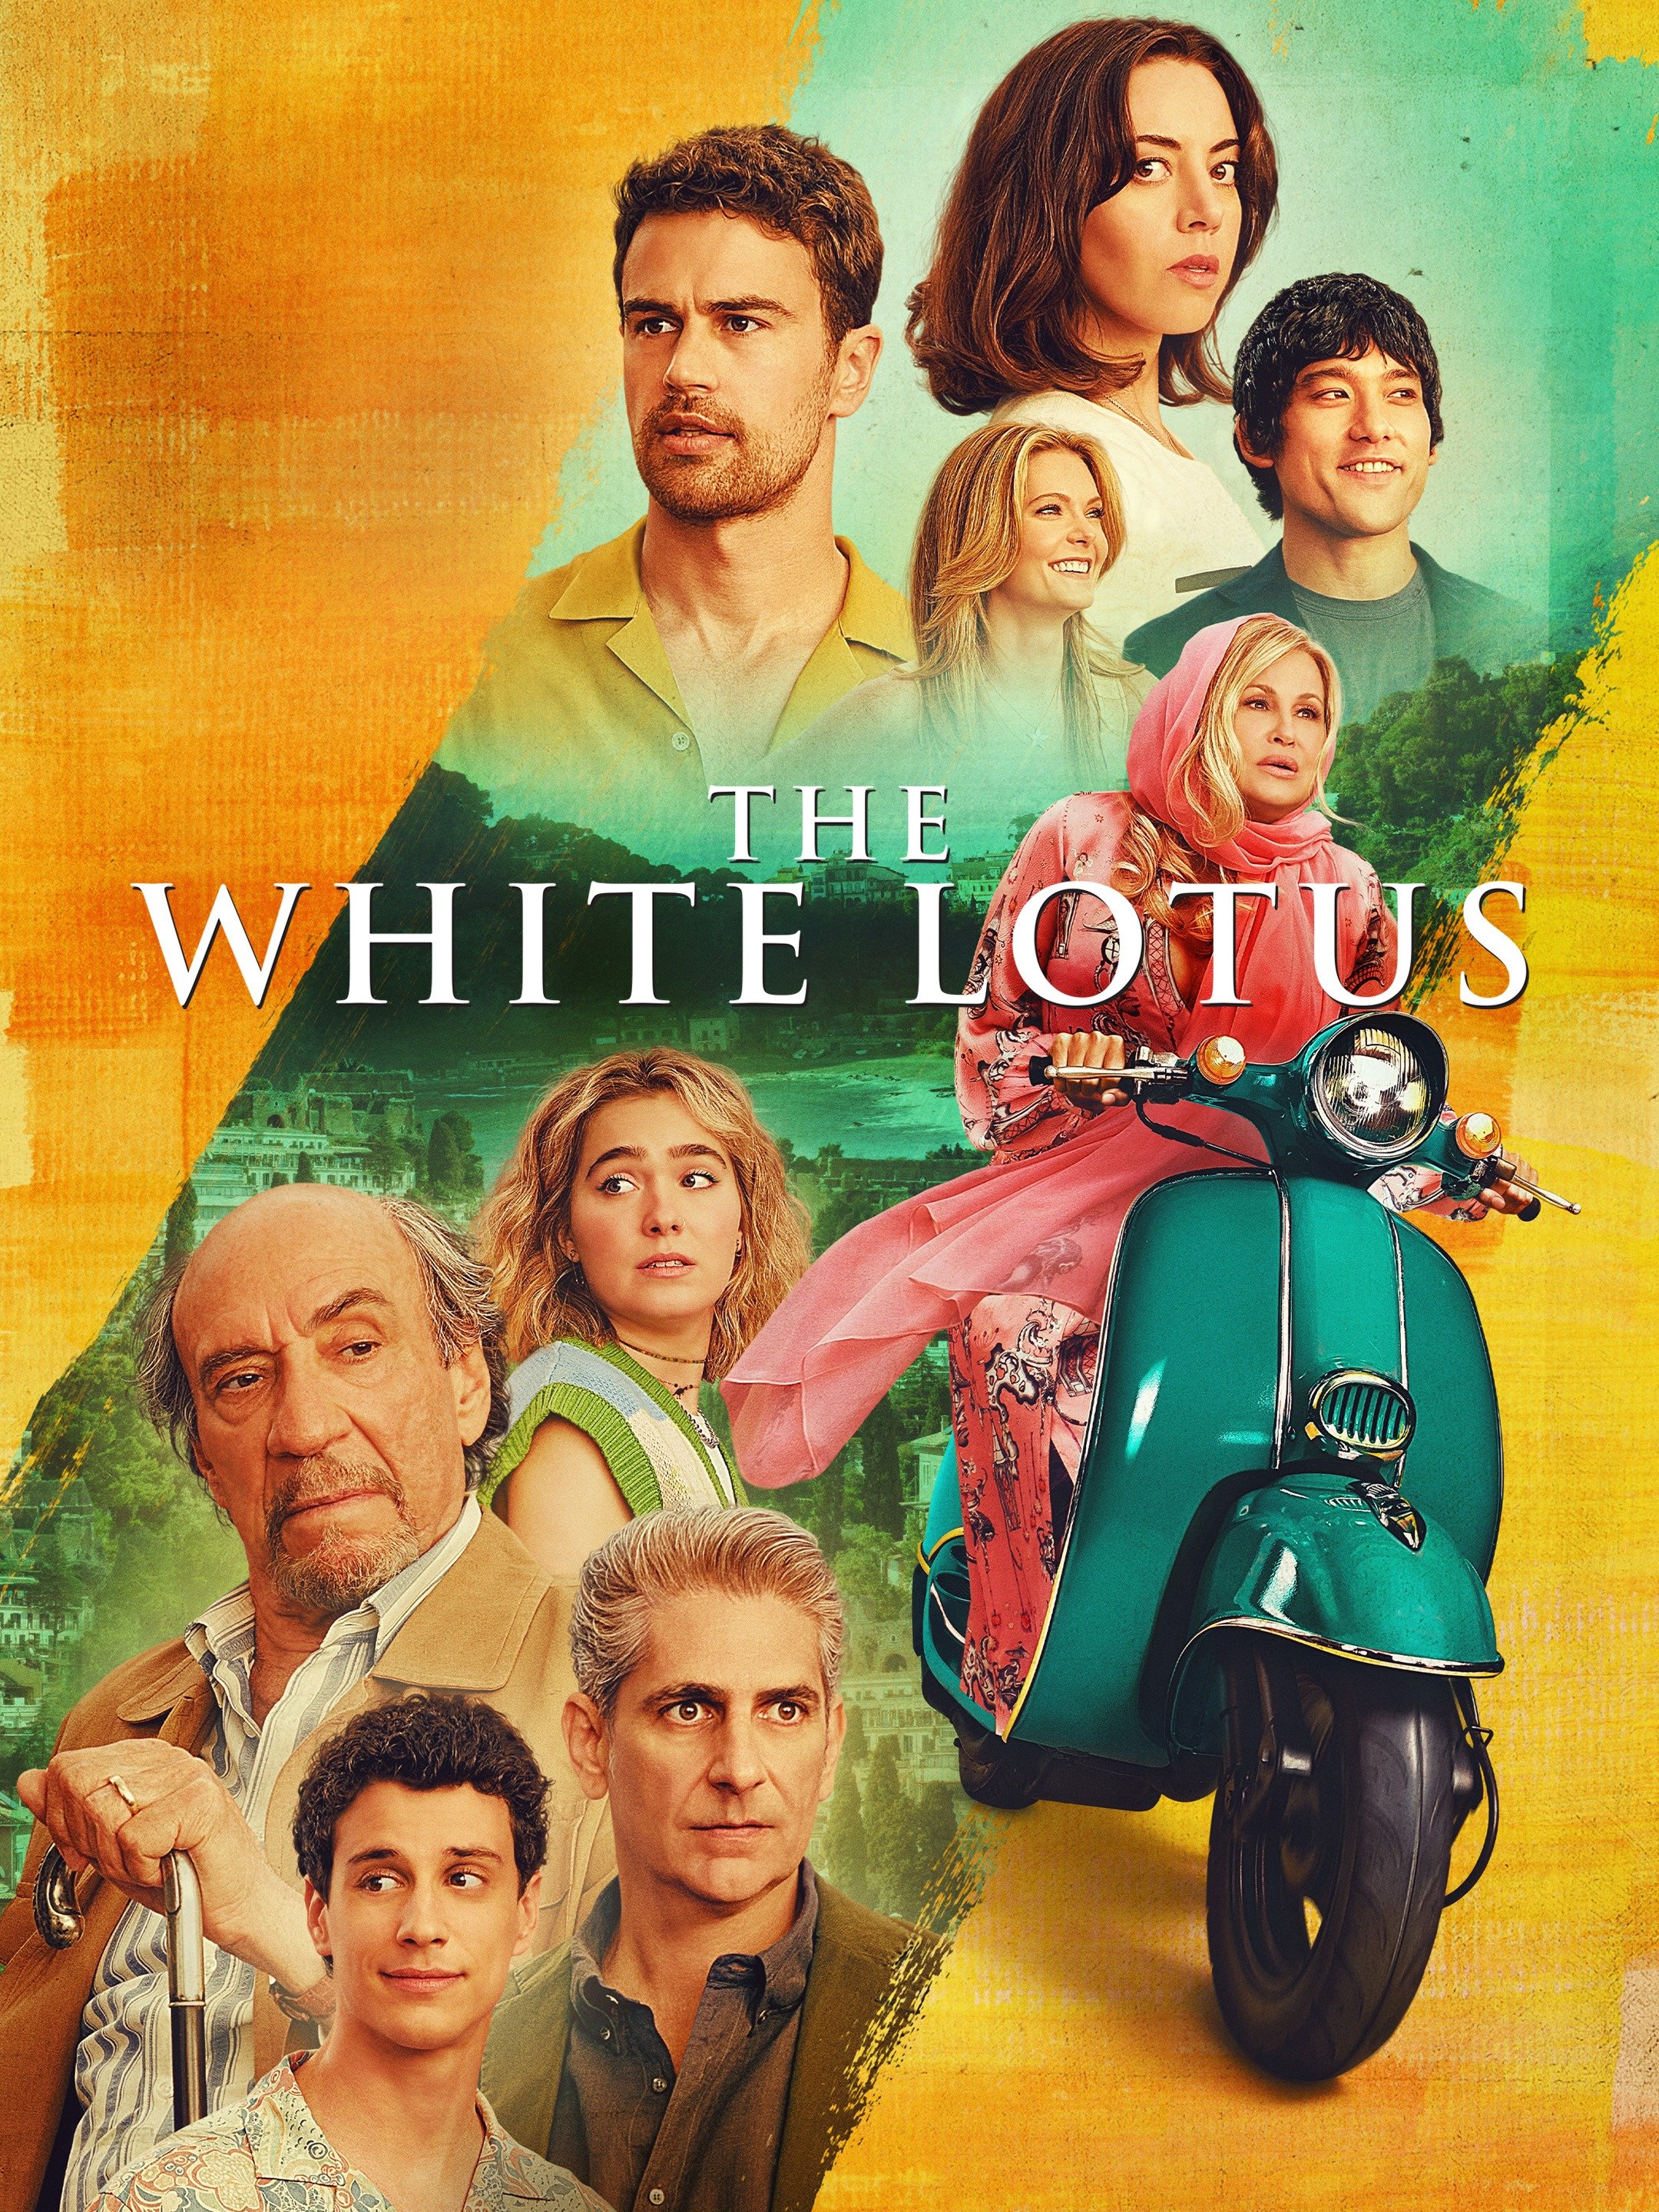 The White Lotus Season 2 episode 3 air time and plot